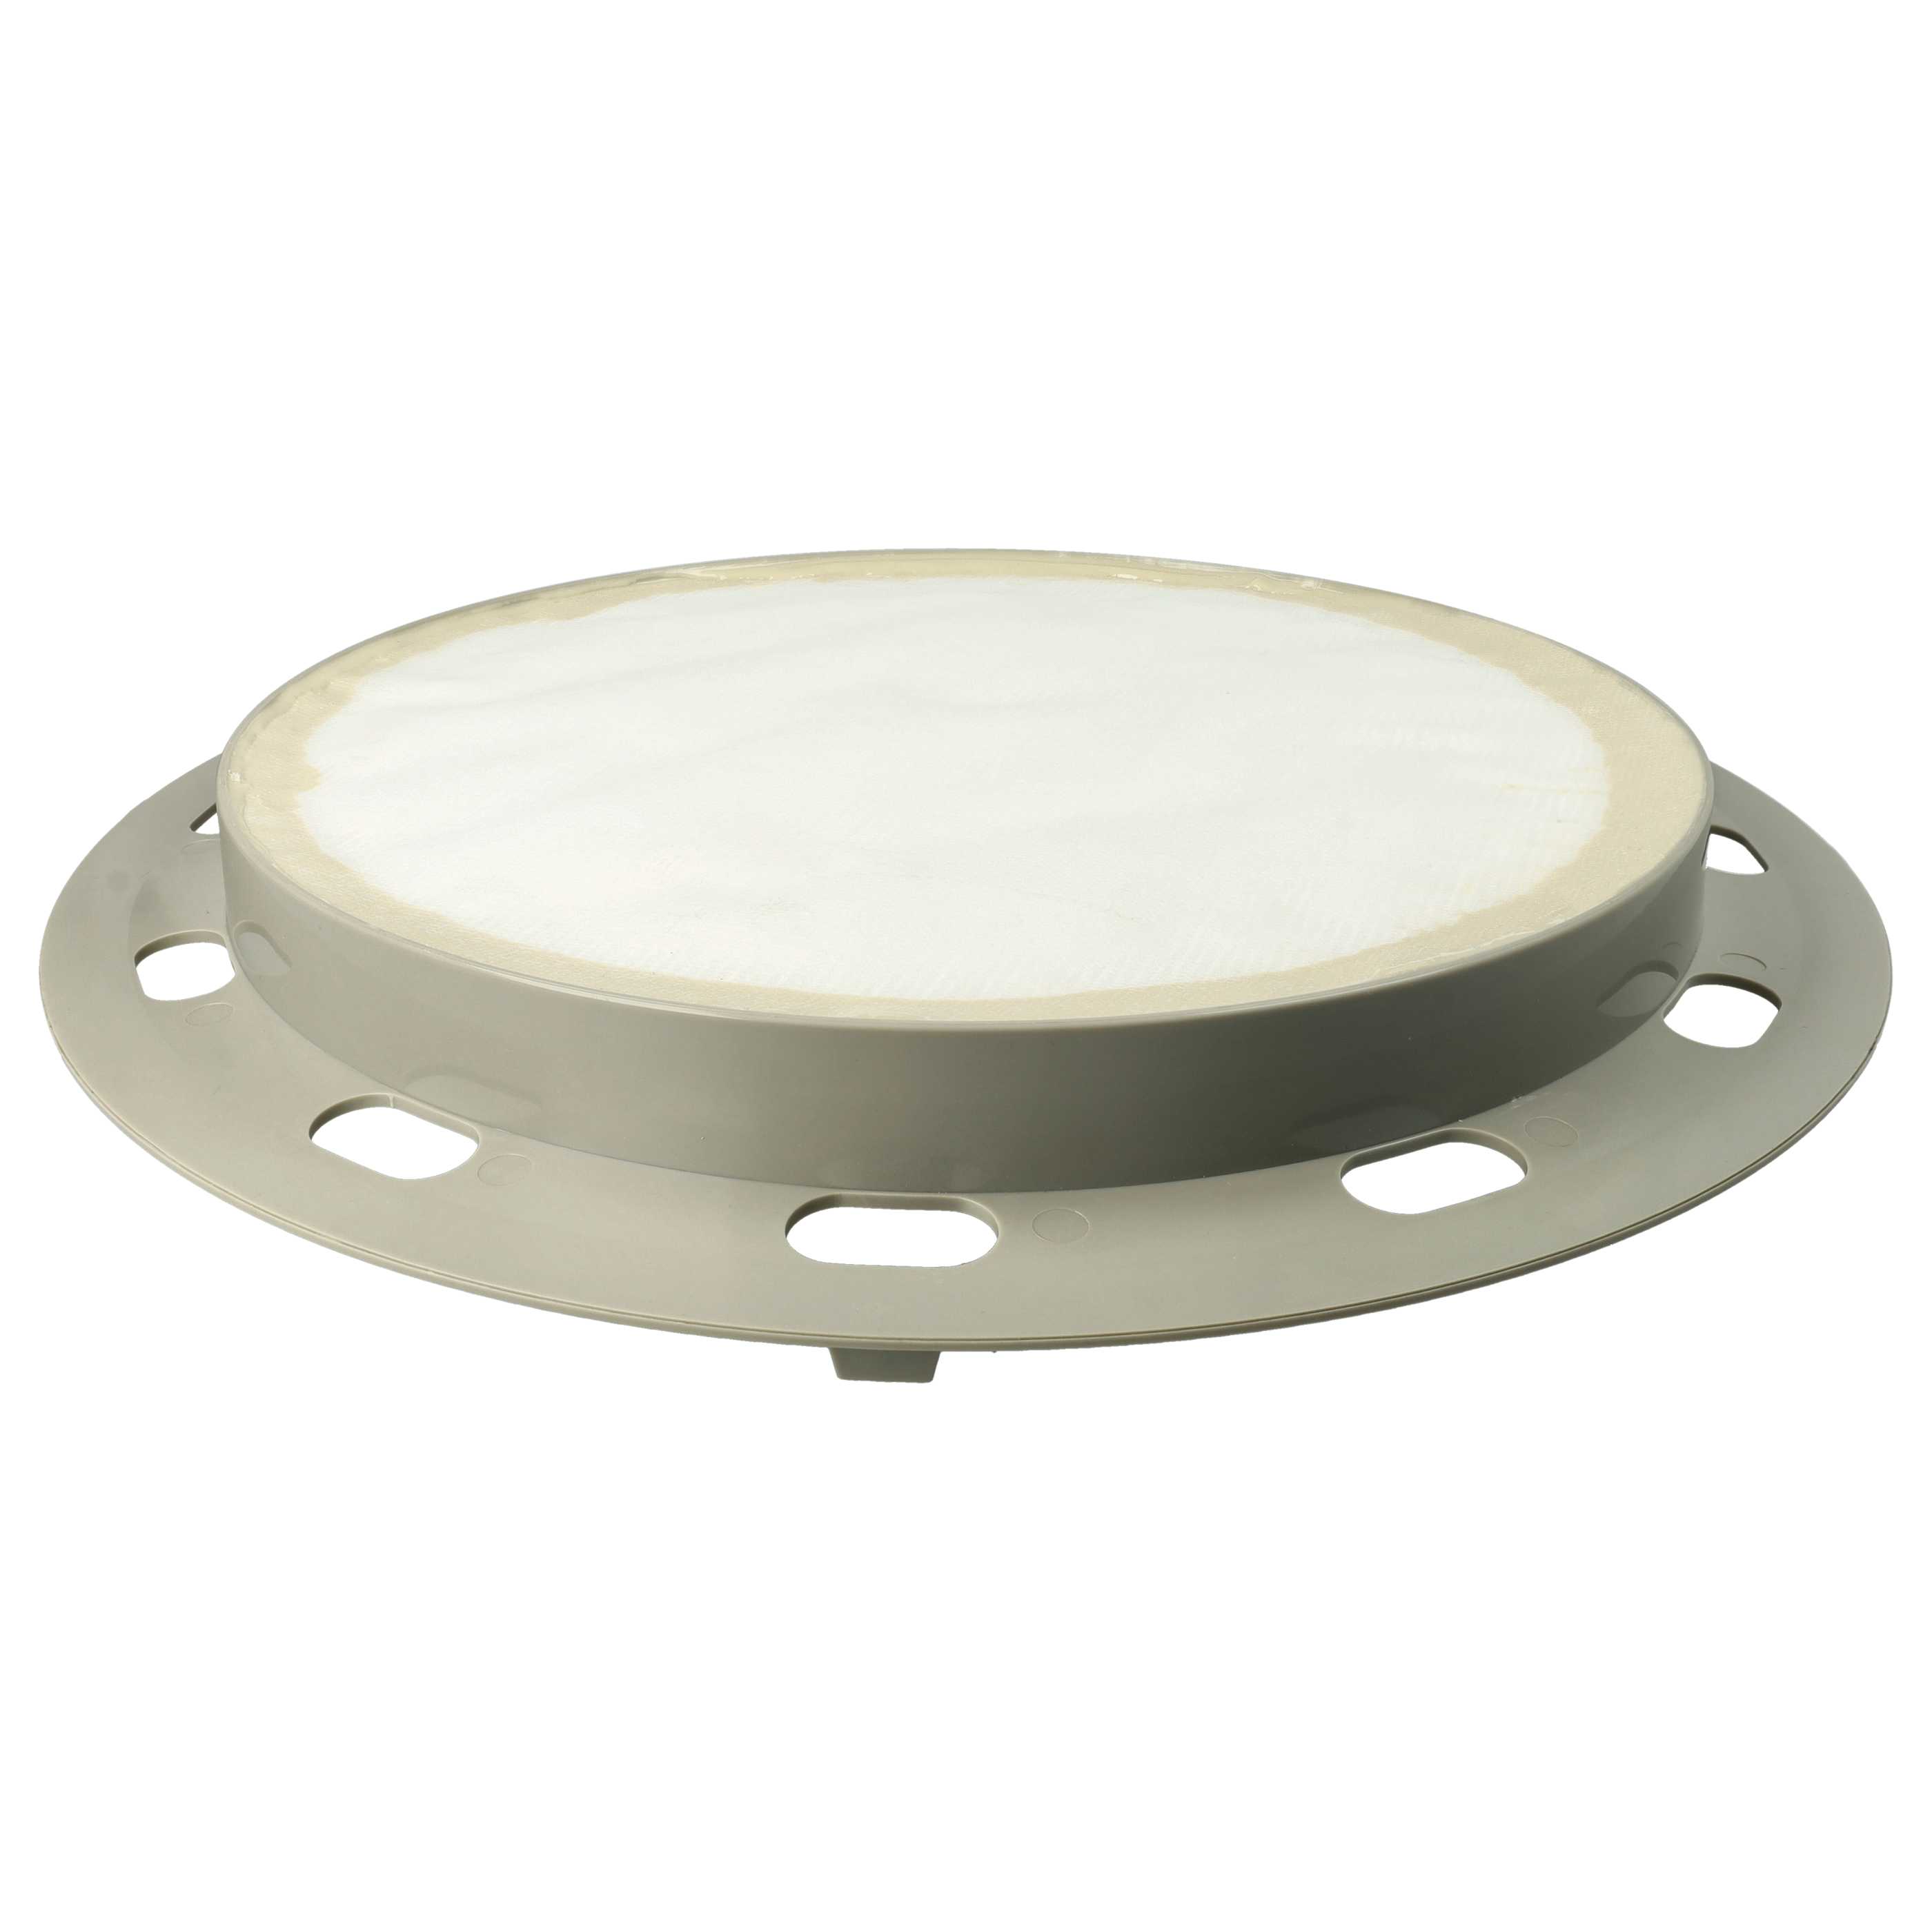 Filtre remplace Nilfisk Alto 1402666010, 140 2666 010 pour aspirateur - filtre HEPA